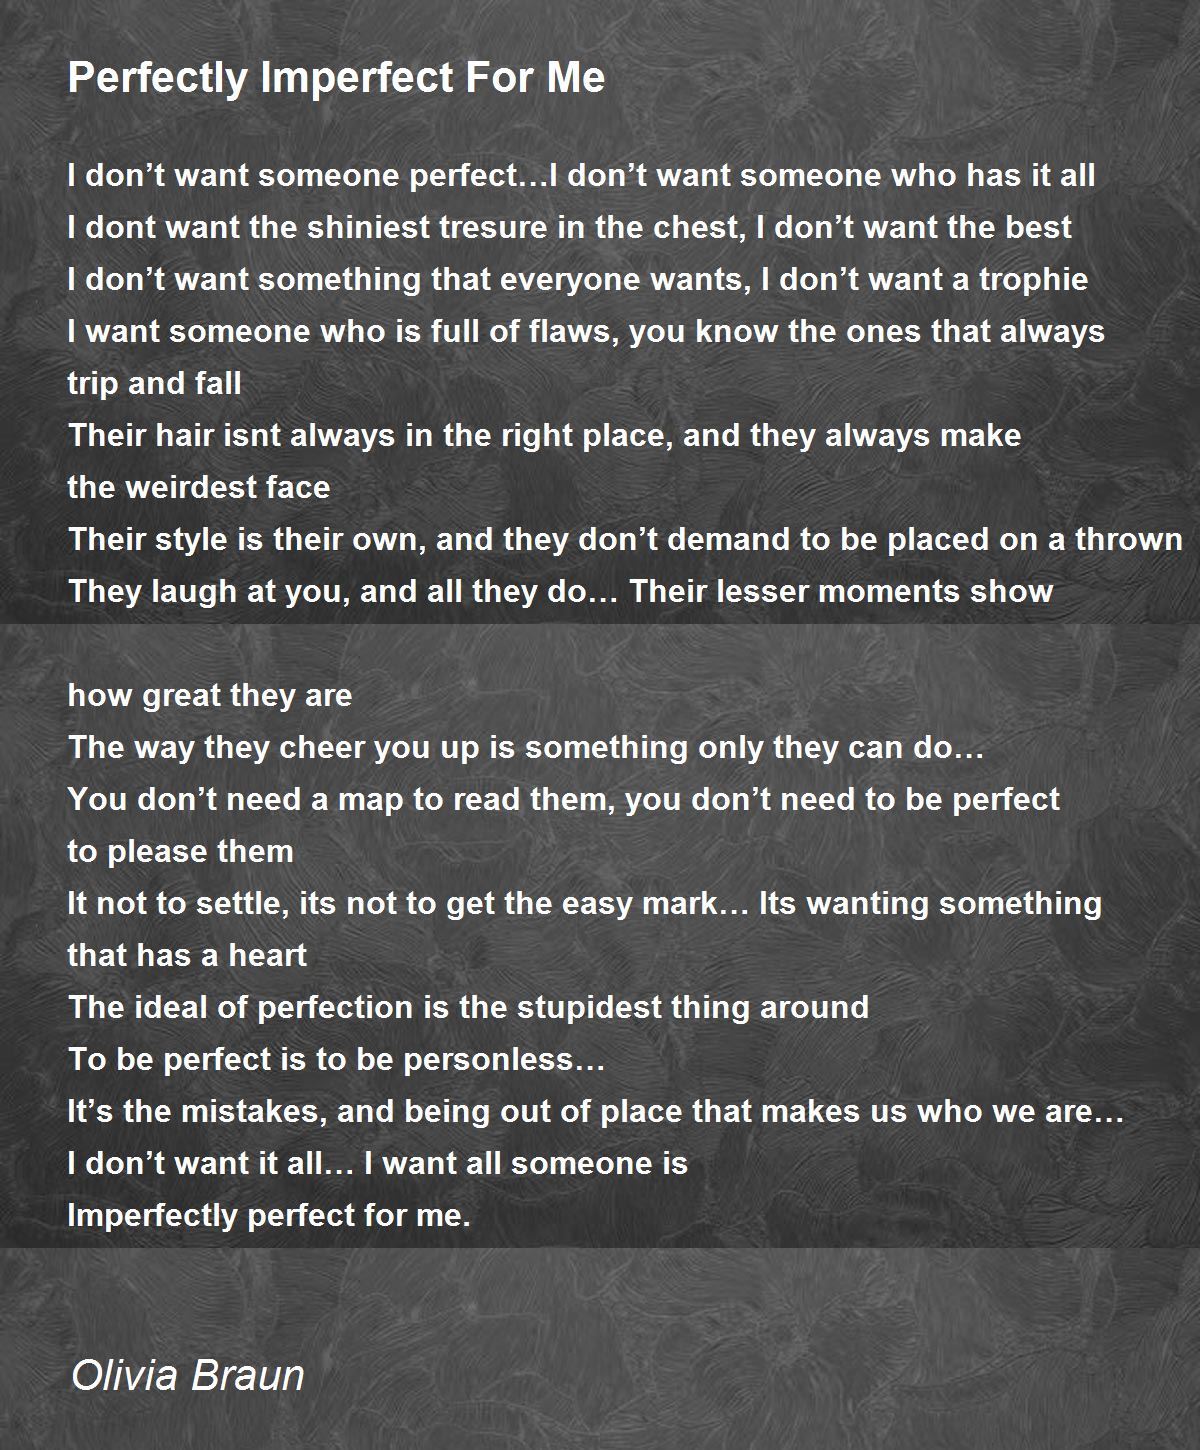 Perfectly Imperfect For Me - Perfectly Imperfect For Me Poem by Olivia Braun